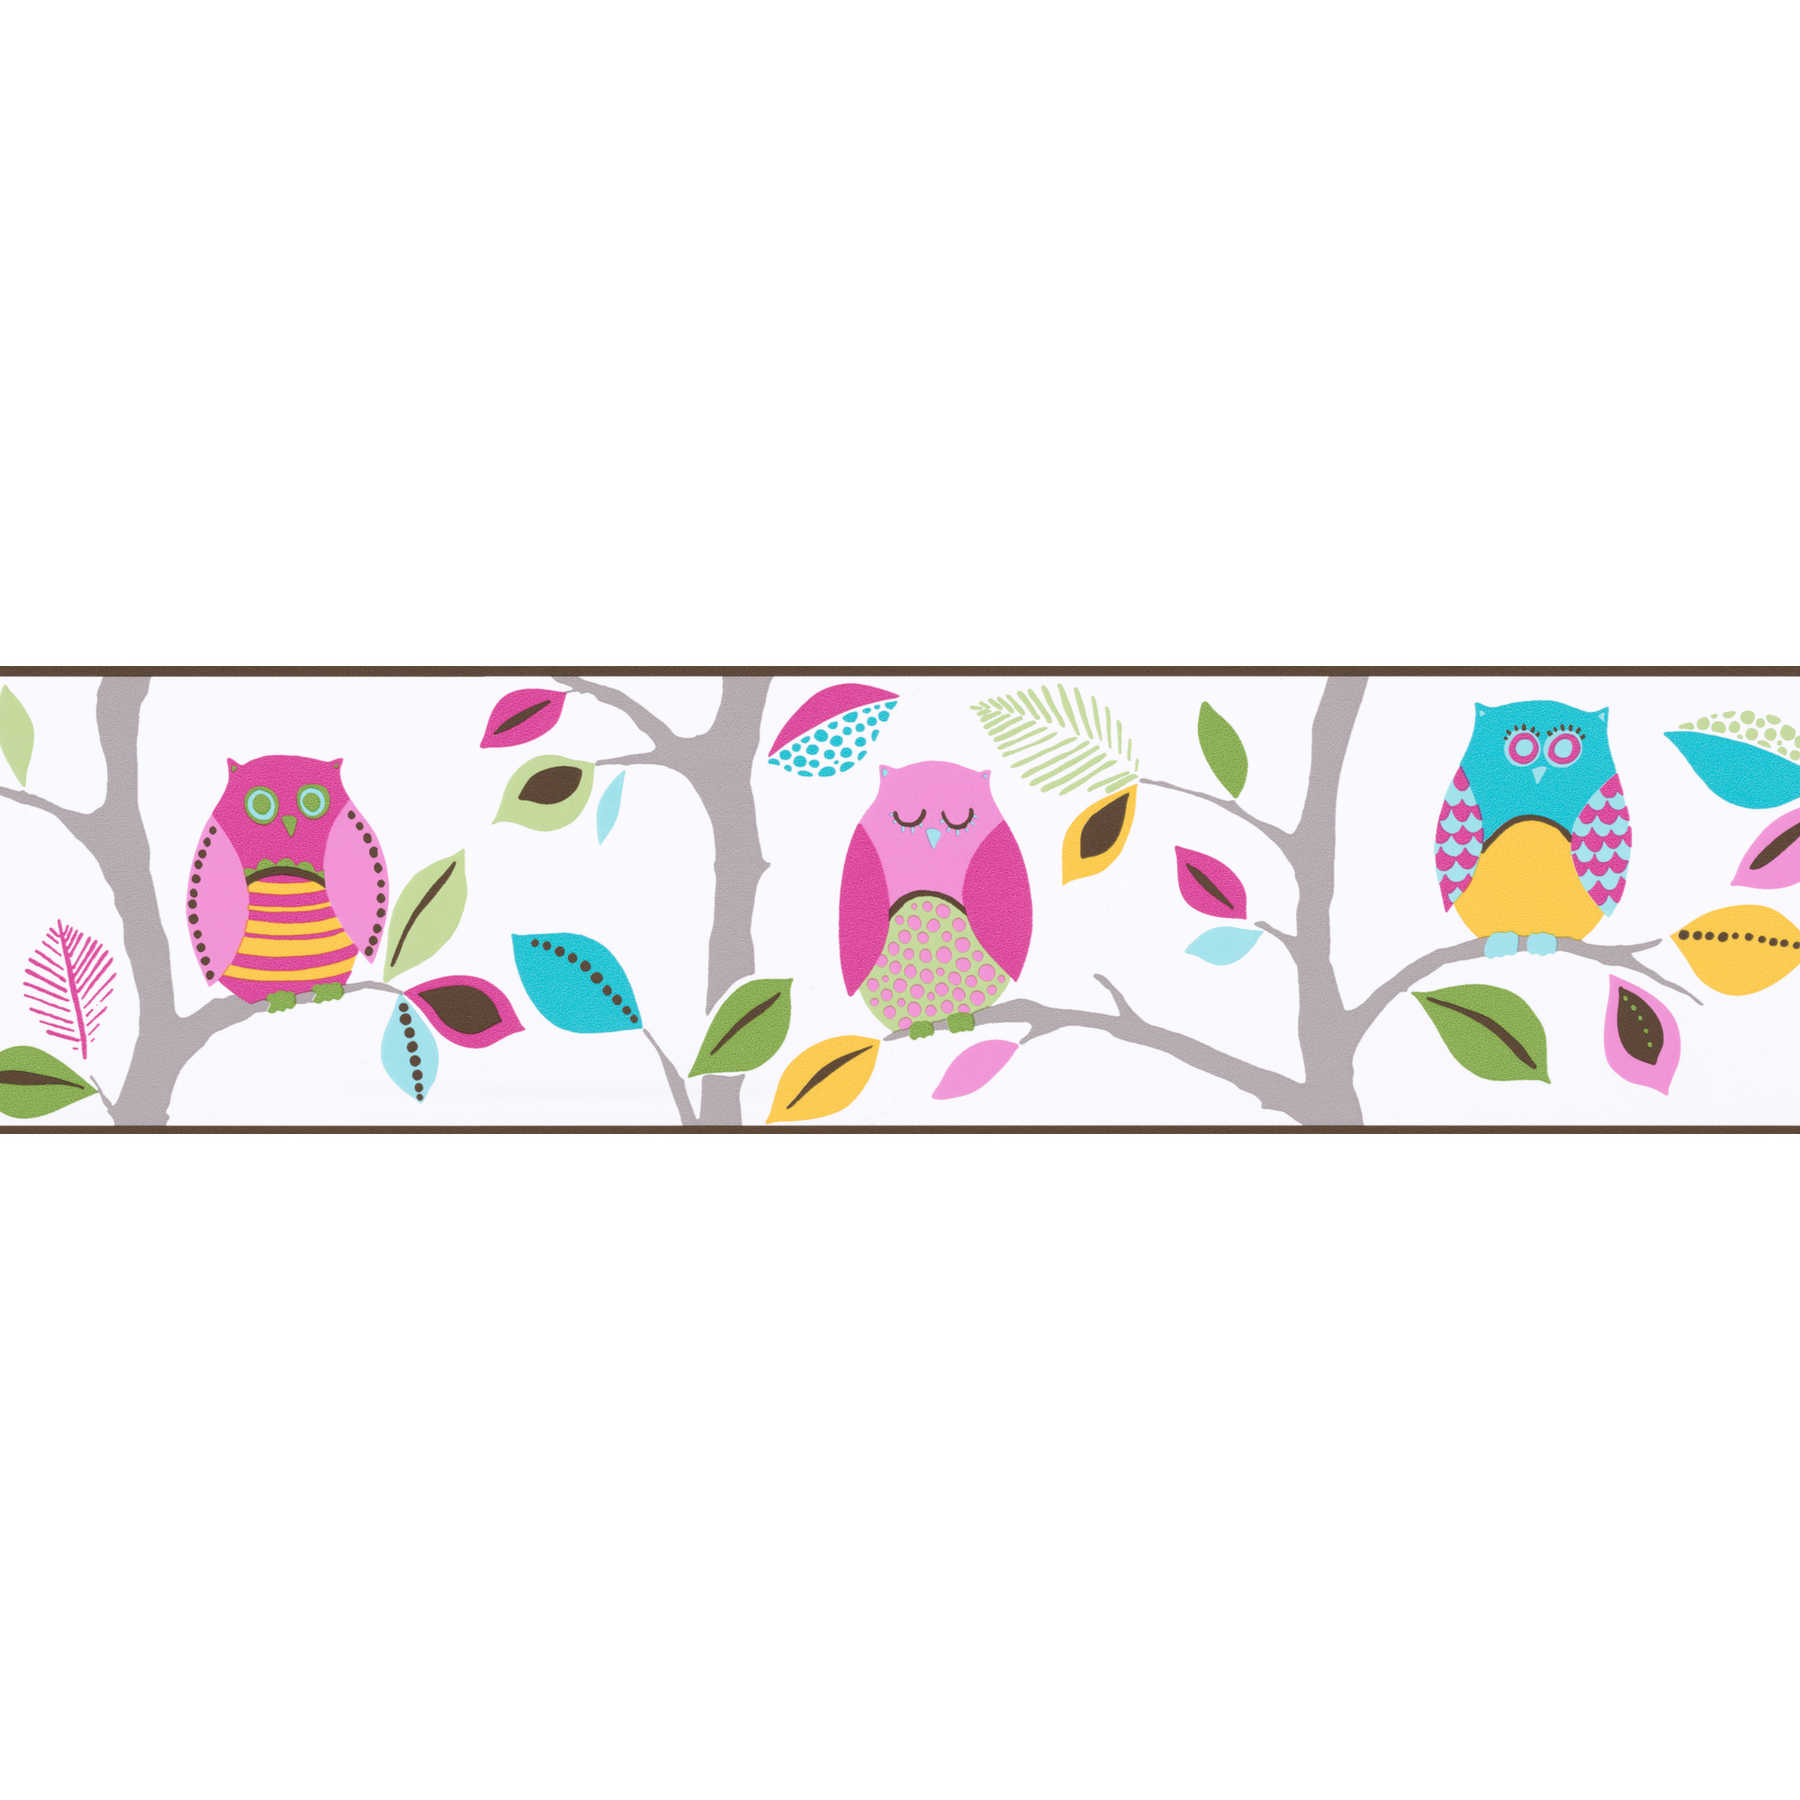 Bordure de papier peint hiboux multicolores pour chambre d'enfant - Coloré
